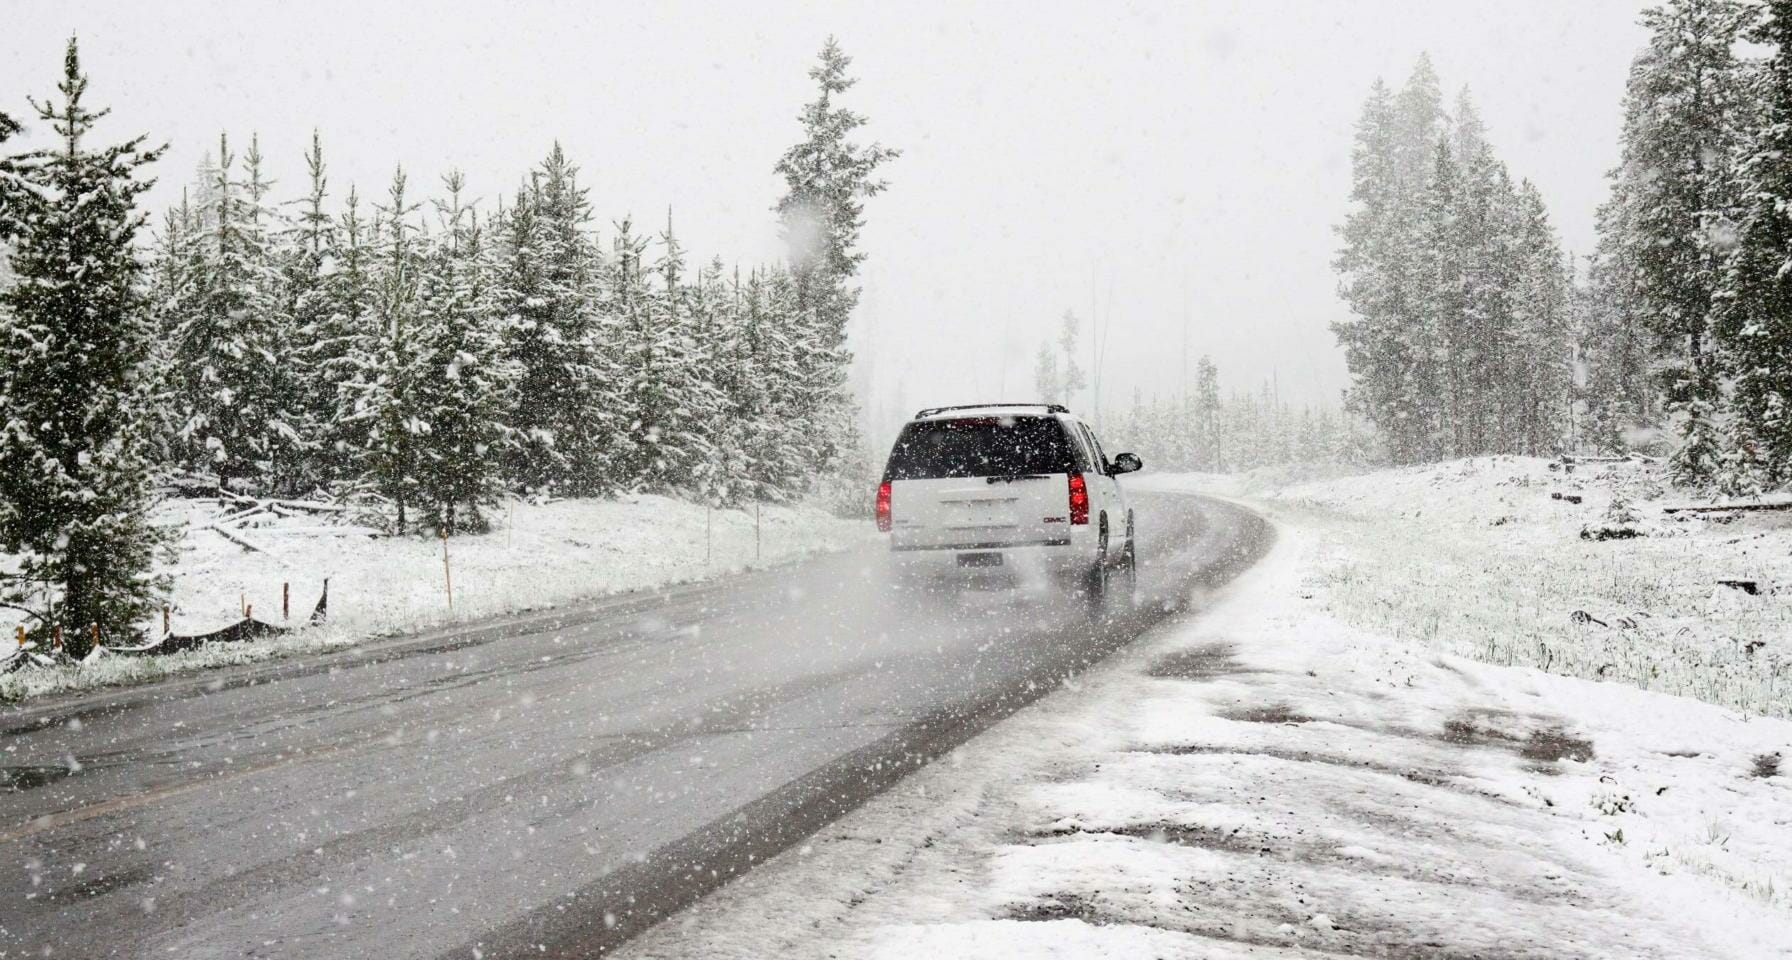 SUV traveling across frozen road in snowy terrain